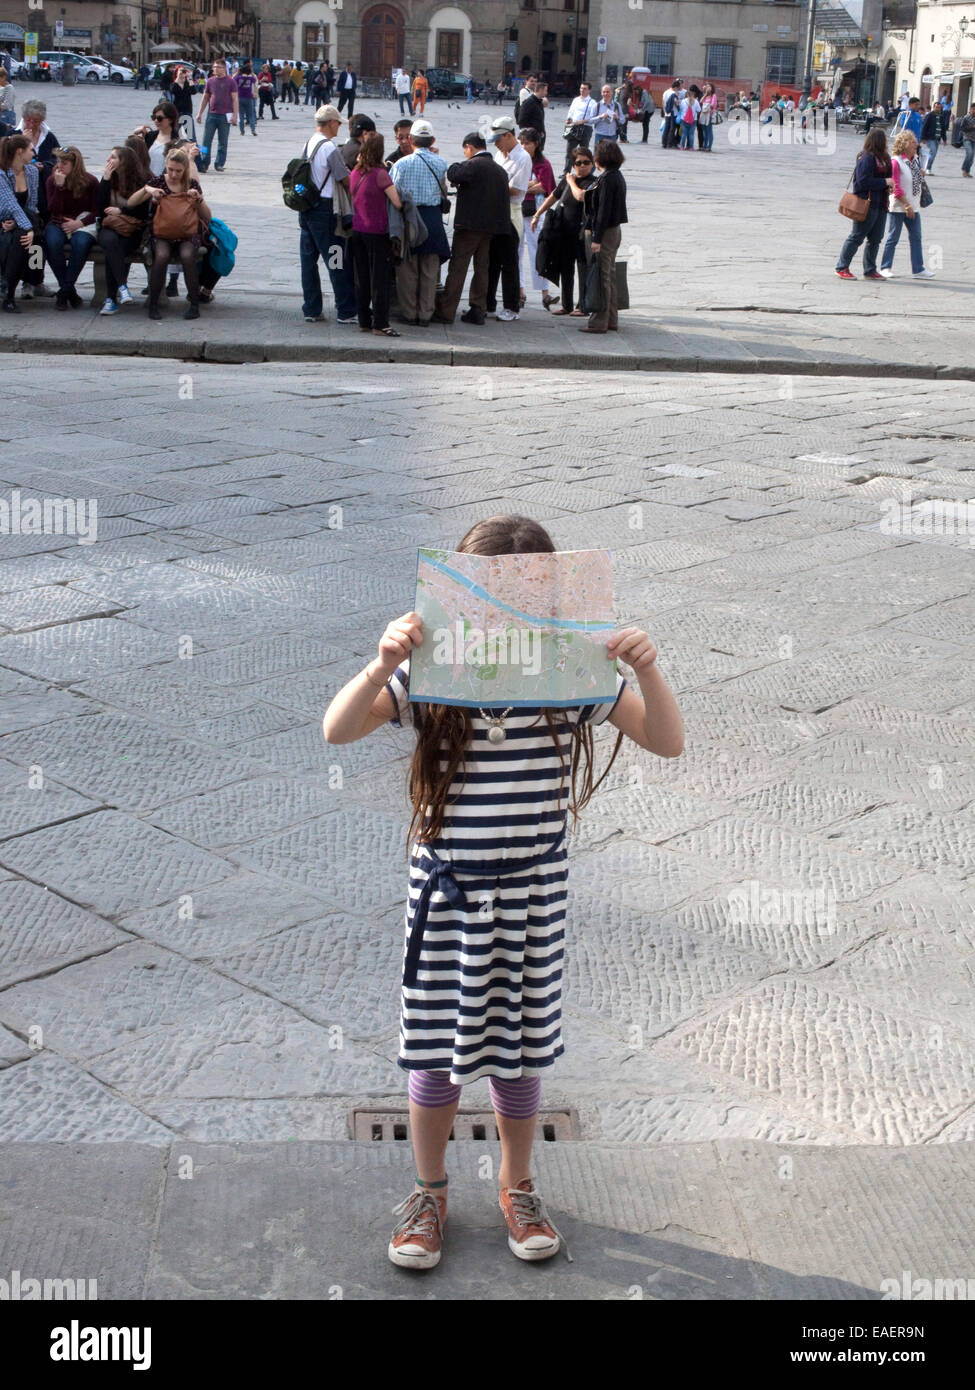 Les jeunes avec la carte touristique à Florence, Italie Banque D'Images